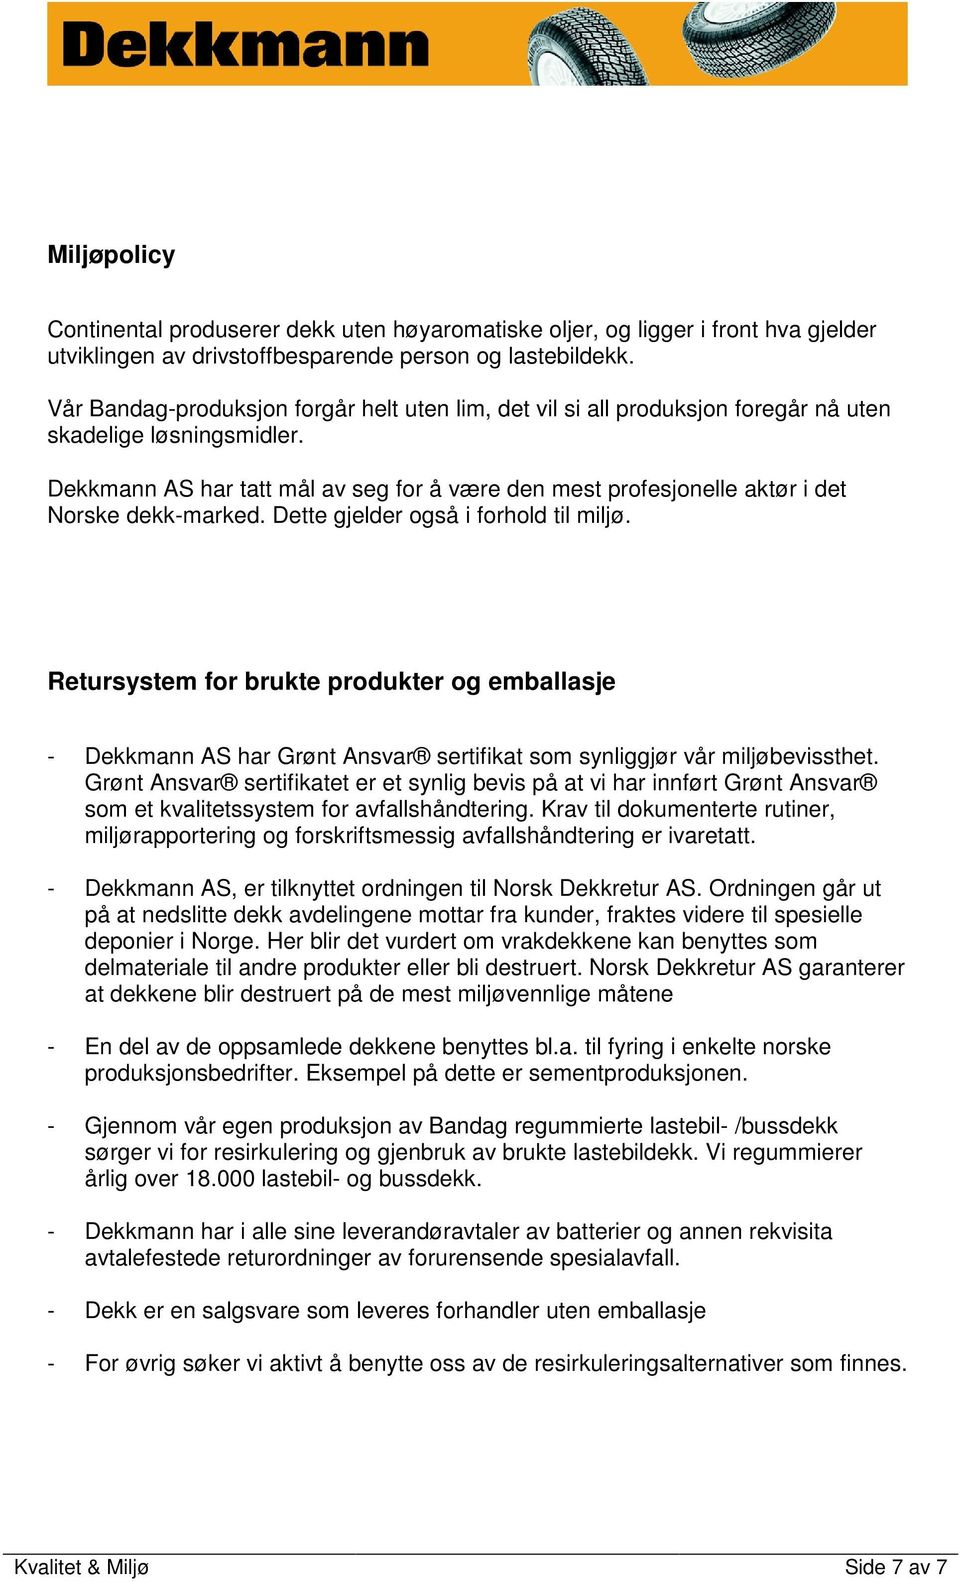 Dekkmann AS har tatt mål av seg for å være den mest profesjonelle aktør i det Norske dekk-marked. Dette gjelder også i forhold til miljø.